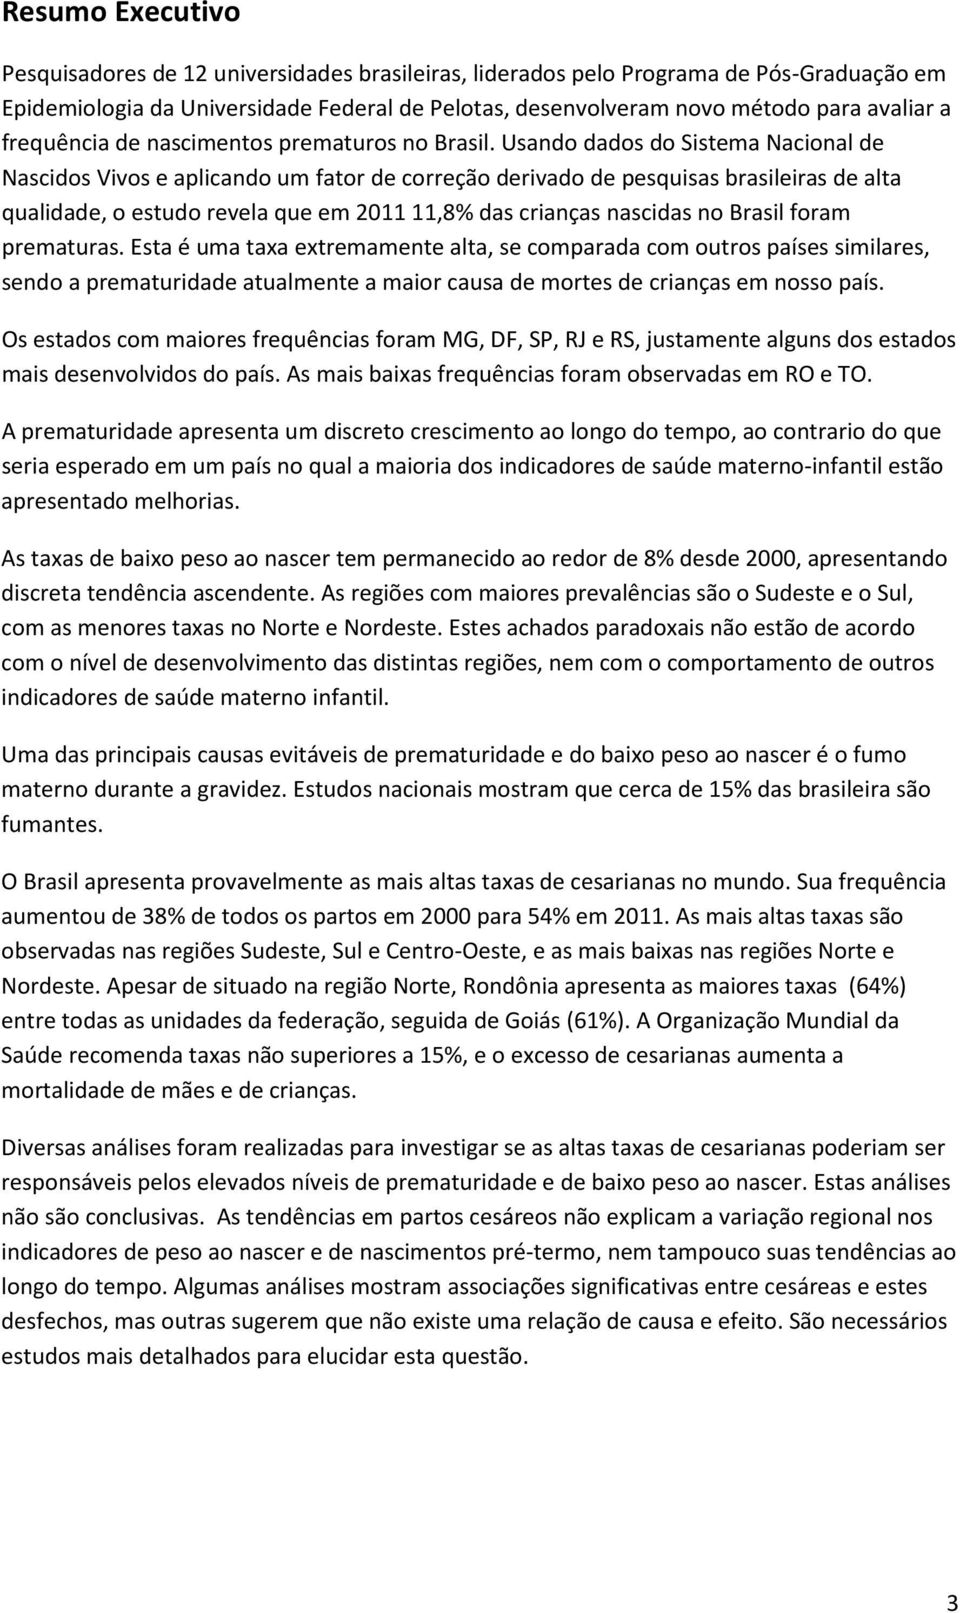 Usando dados do Sistema Nacional de Nascidos Vivos e aplicando um fator de correção derivado de pesquisas brasileiras de alta qualidade, o estudo revela que em 2011 11,8% das crianças nascidas no